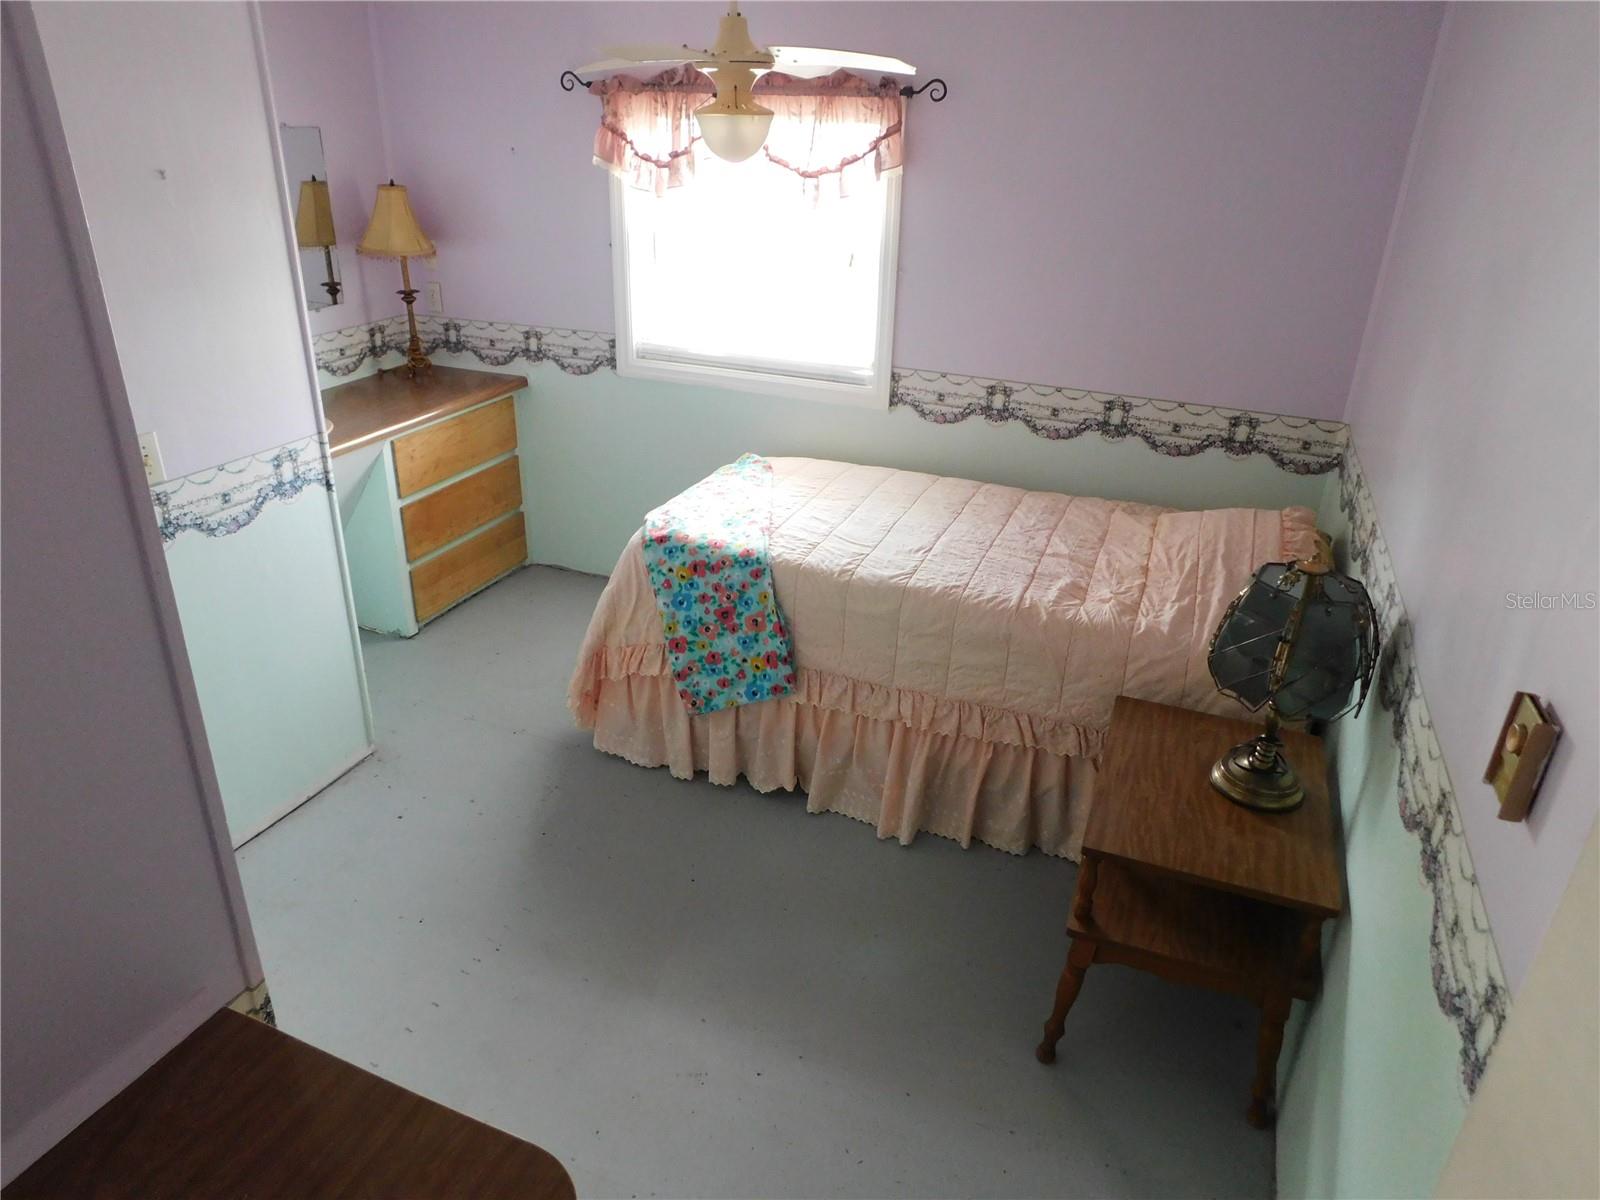 Bedroom 2.